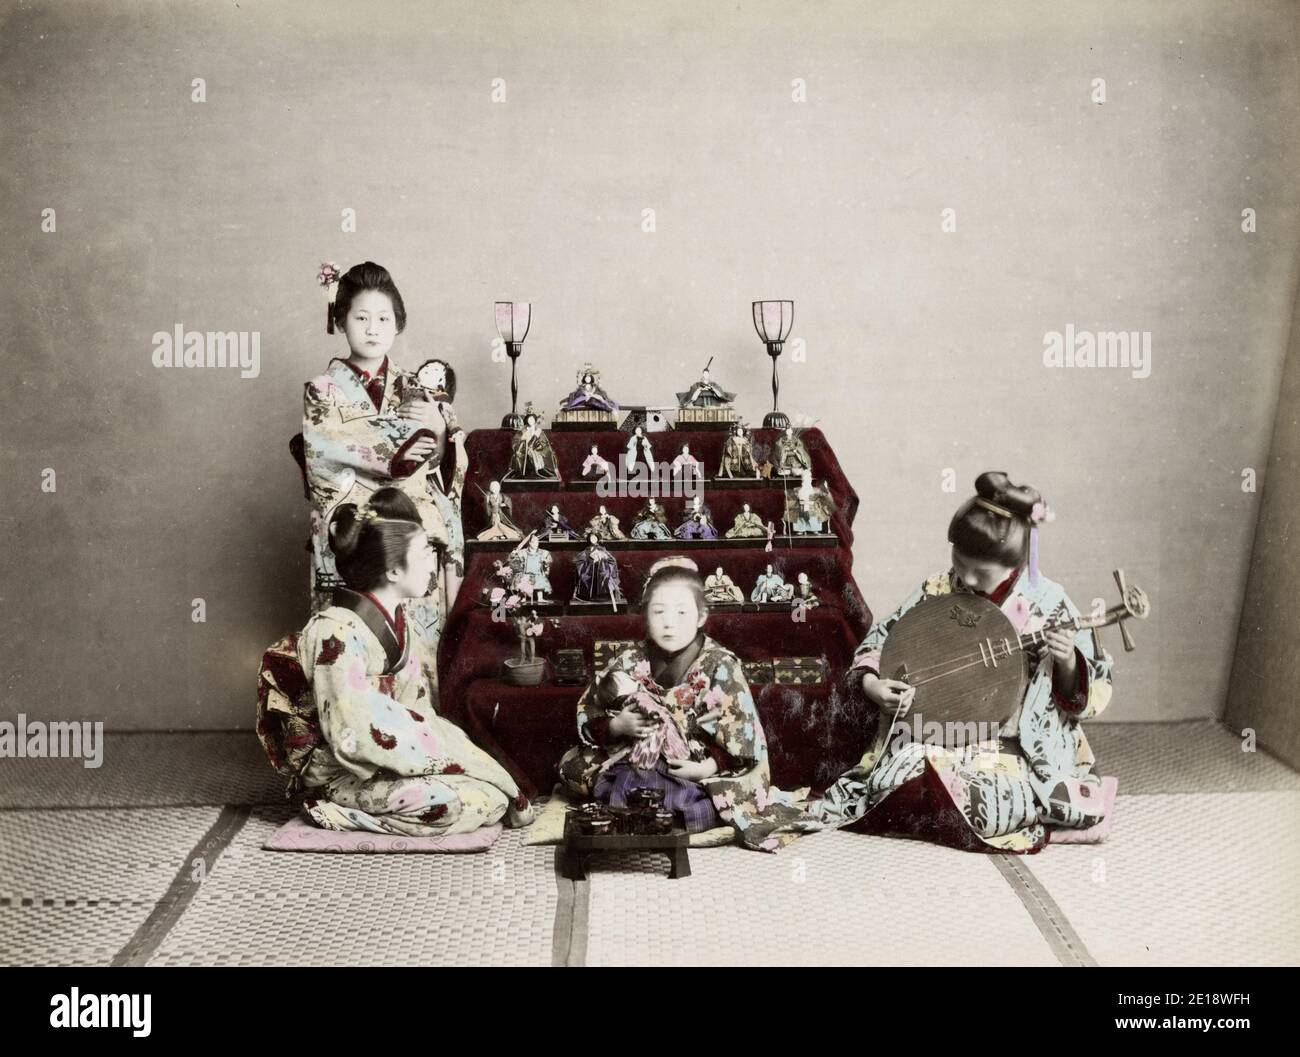 Vintage 19. Jahrhundert Foto - Meiji Ära Japan: Girls Festival, März. Hinamatsuri, auch Doll's Day oder Girls' Day genannt, ist ein besonderer Tag in Japan. Jedes Jahr am 3. März gefeiert, werden auf den mit rotem Teppichmaterial bedeckten Plattformen ornamentale Puppen ausgestellt, die den Kaiser, die Kaiserin, die Begleiter und Musiker in traditioneller Hoftracht der Heian-Zeit darstellen. Stockfoto